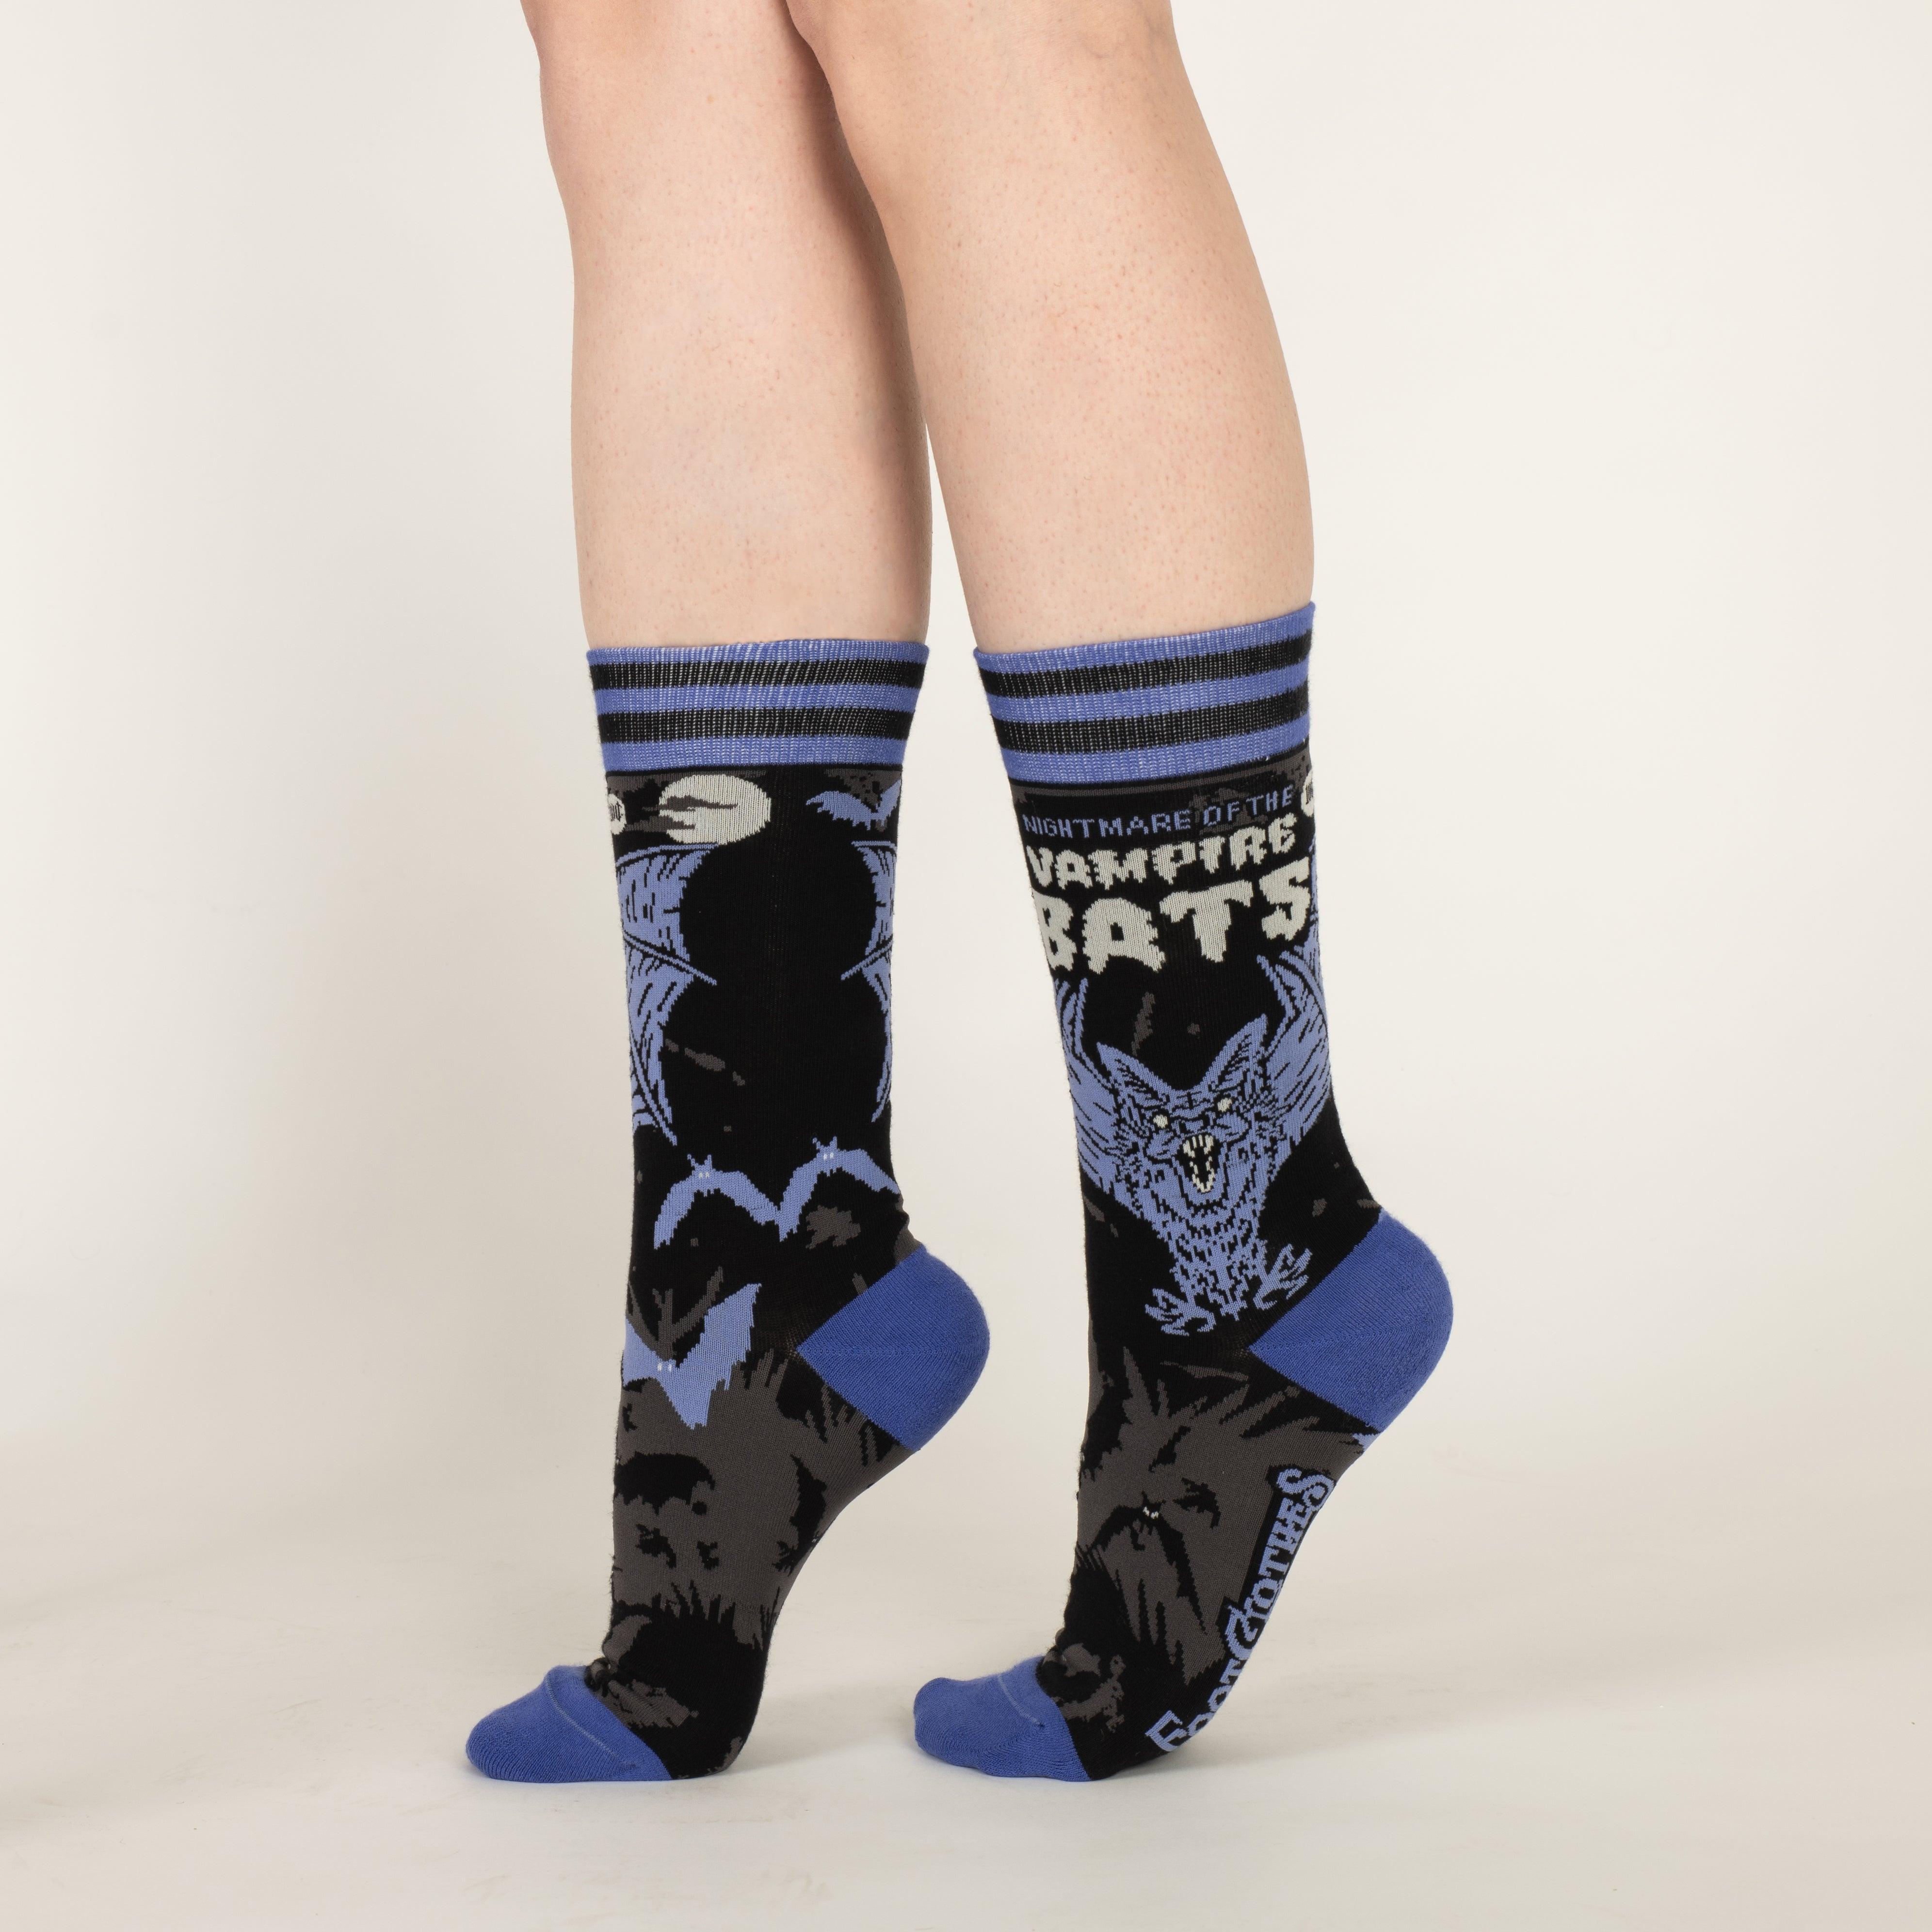 Vampire Bats Crew Socks | FootClothes | Socks | 1802